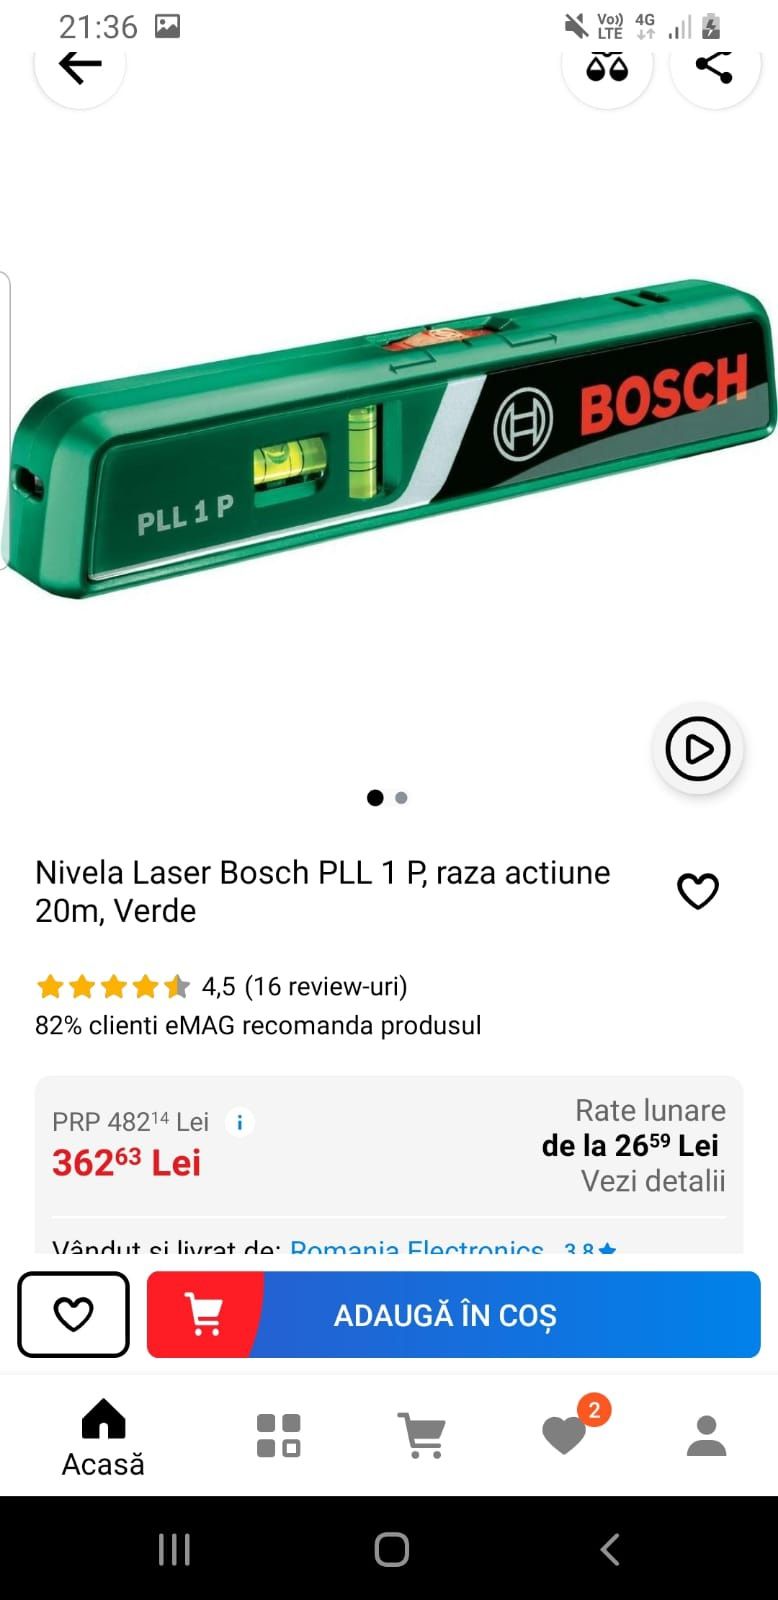 Nivela Laser Bosch